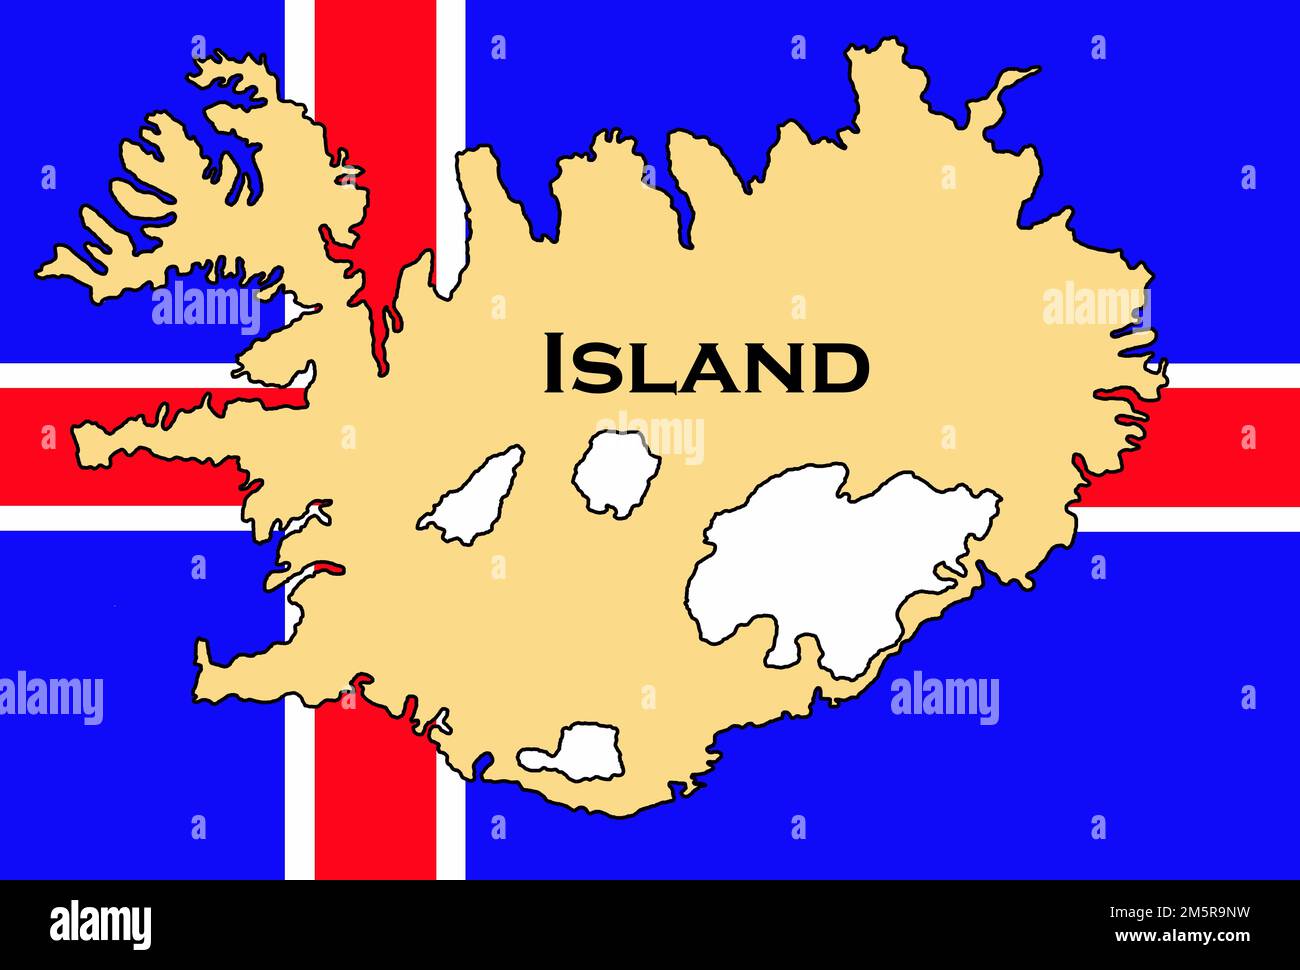 Flagge von Island / bandiera dell'islanda / Flagge von Island mit Landkarte / bandiera dell'islanda con mappa Foto Stock